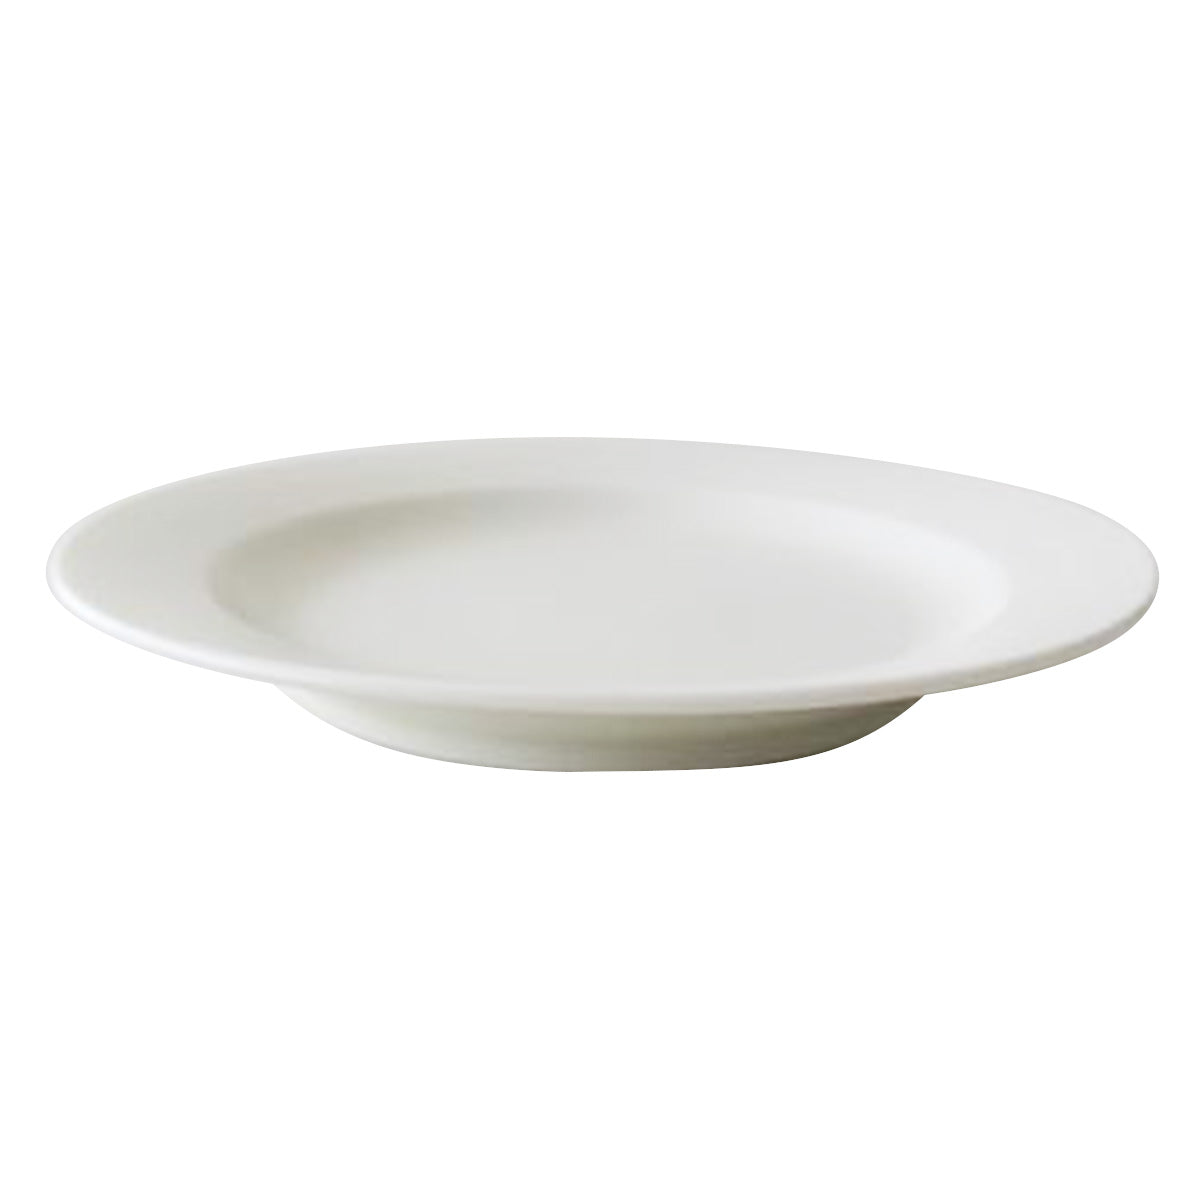 深皿 スープ皿 プレート Tokinone PB. リムプレート6.0皿 アイボリー 19.5cm 0530/049220